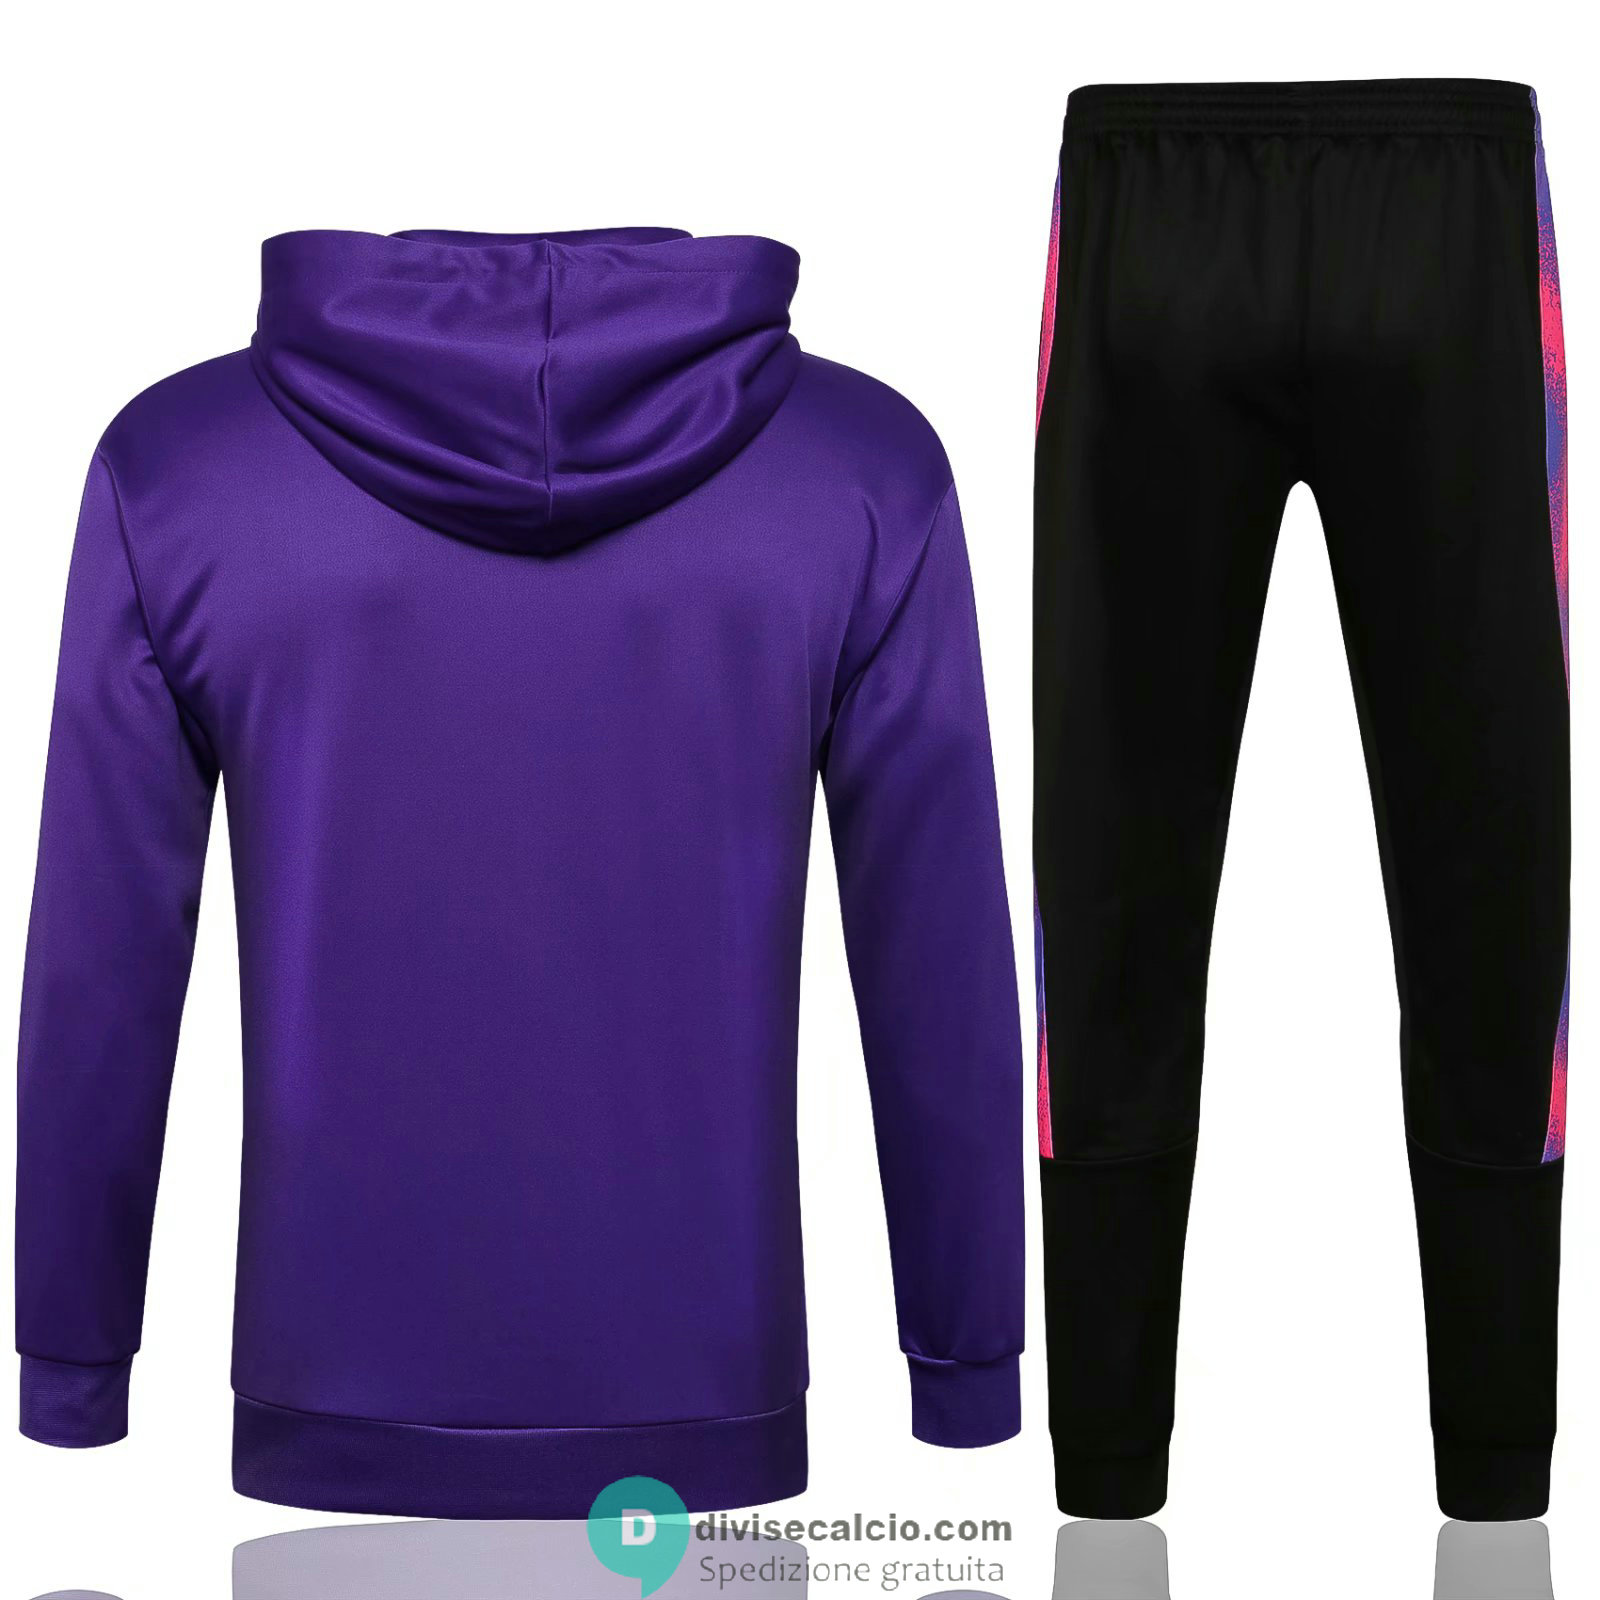 PSG x Jordan Felpa Cappuccio Purple + Pantaloni Black 2021/2022